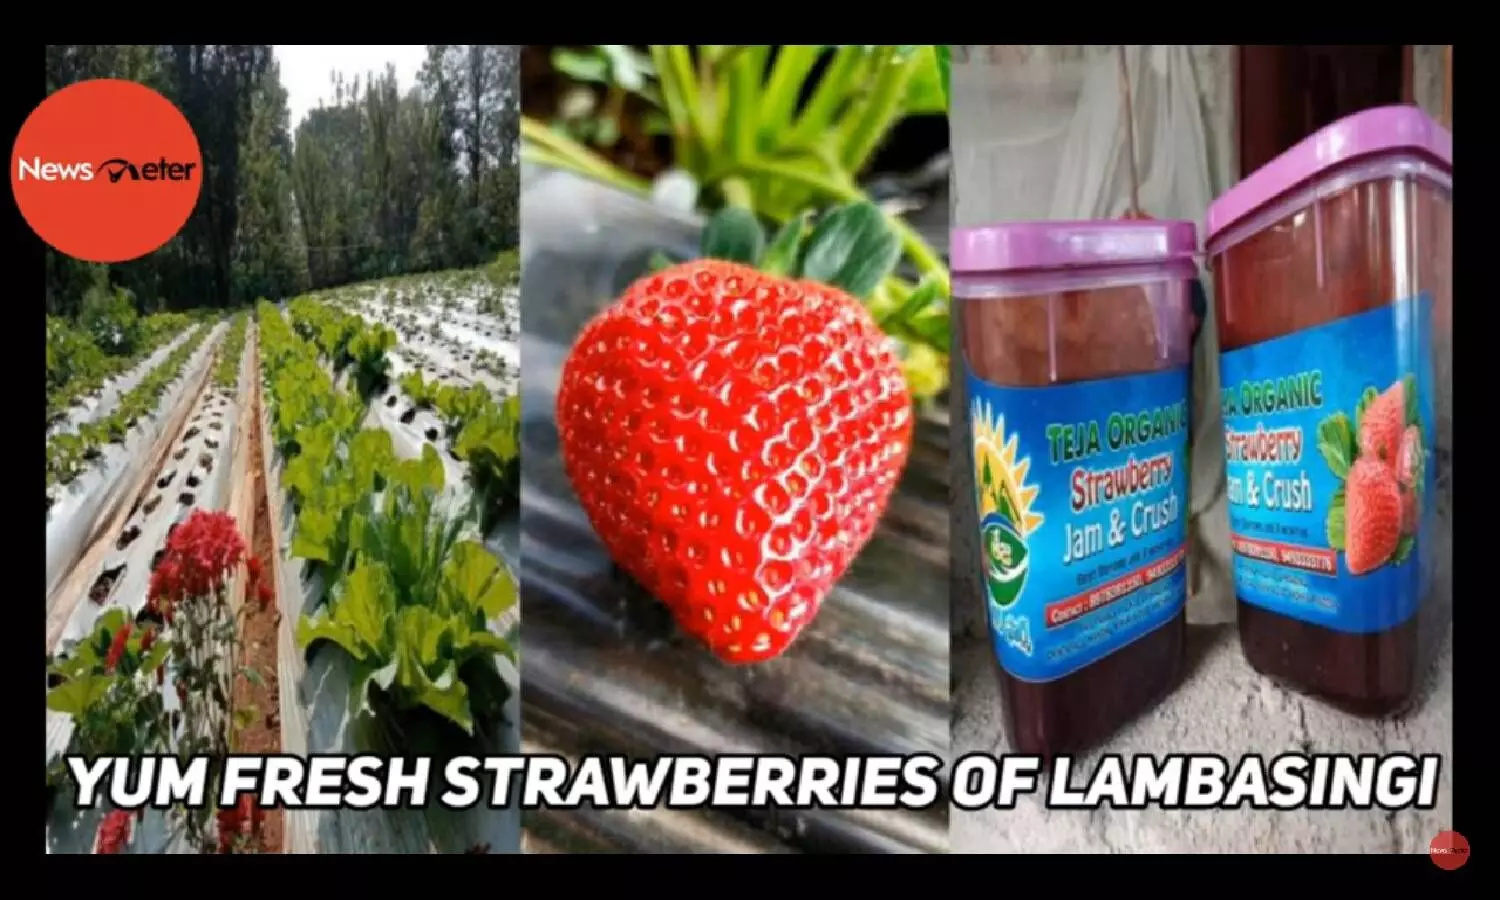 Yum Fresh Strawberries of Lambasingi